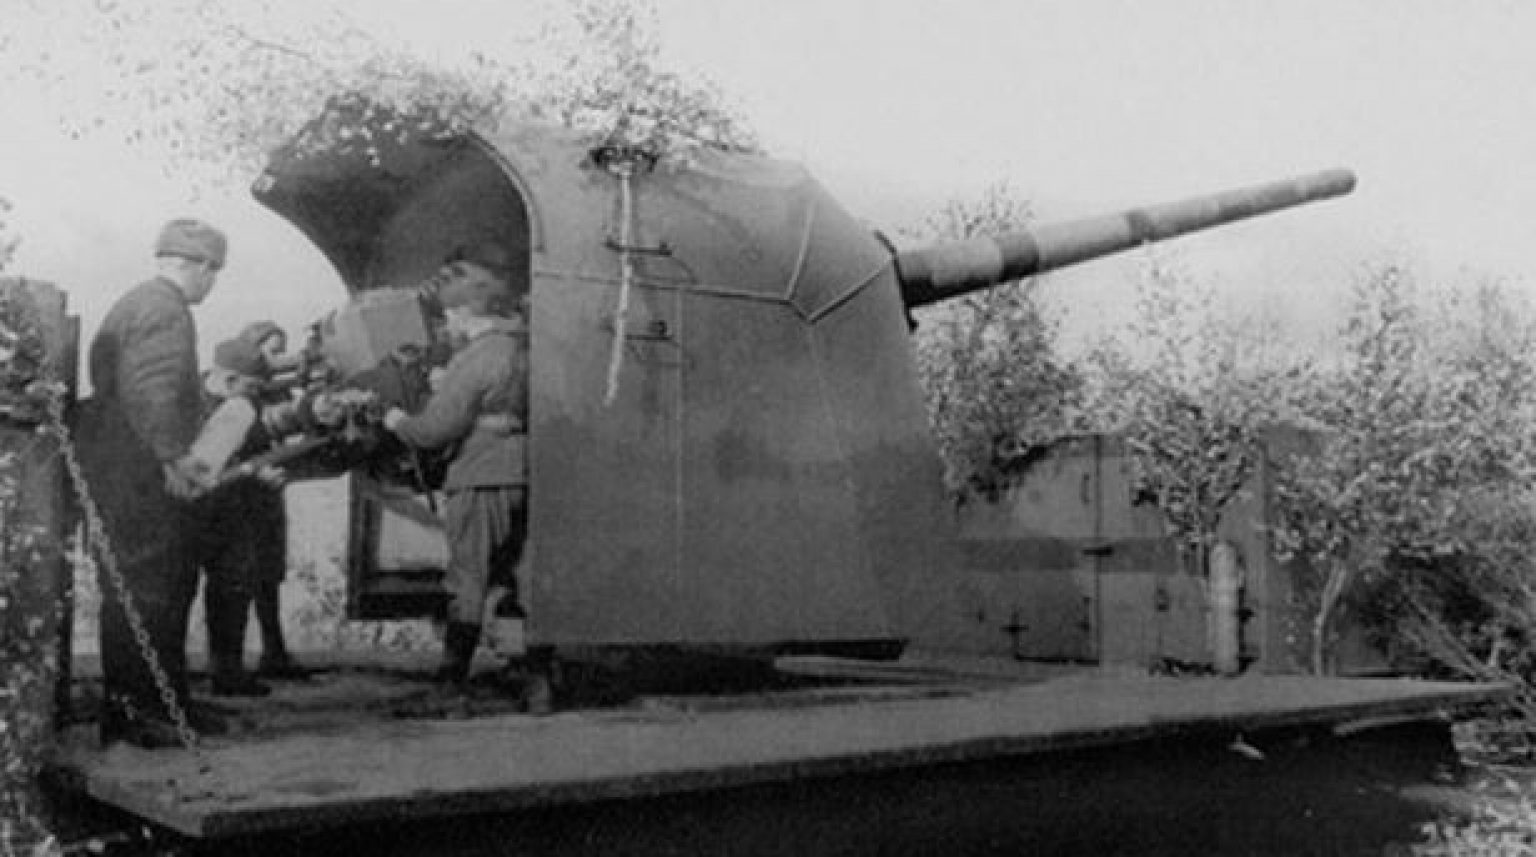 Б 13. Б-13 орудие. 130 Мм орудие береговой обороны б-13. 130-Мм орудие б-13 Аврора. Орудия береговой обороны Ленинграда.